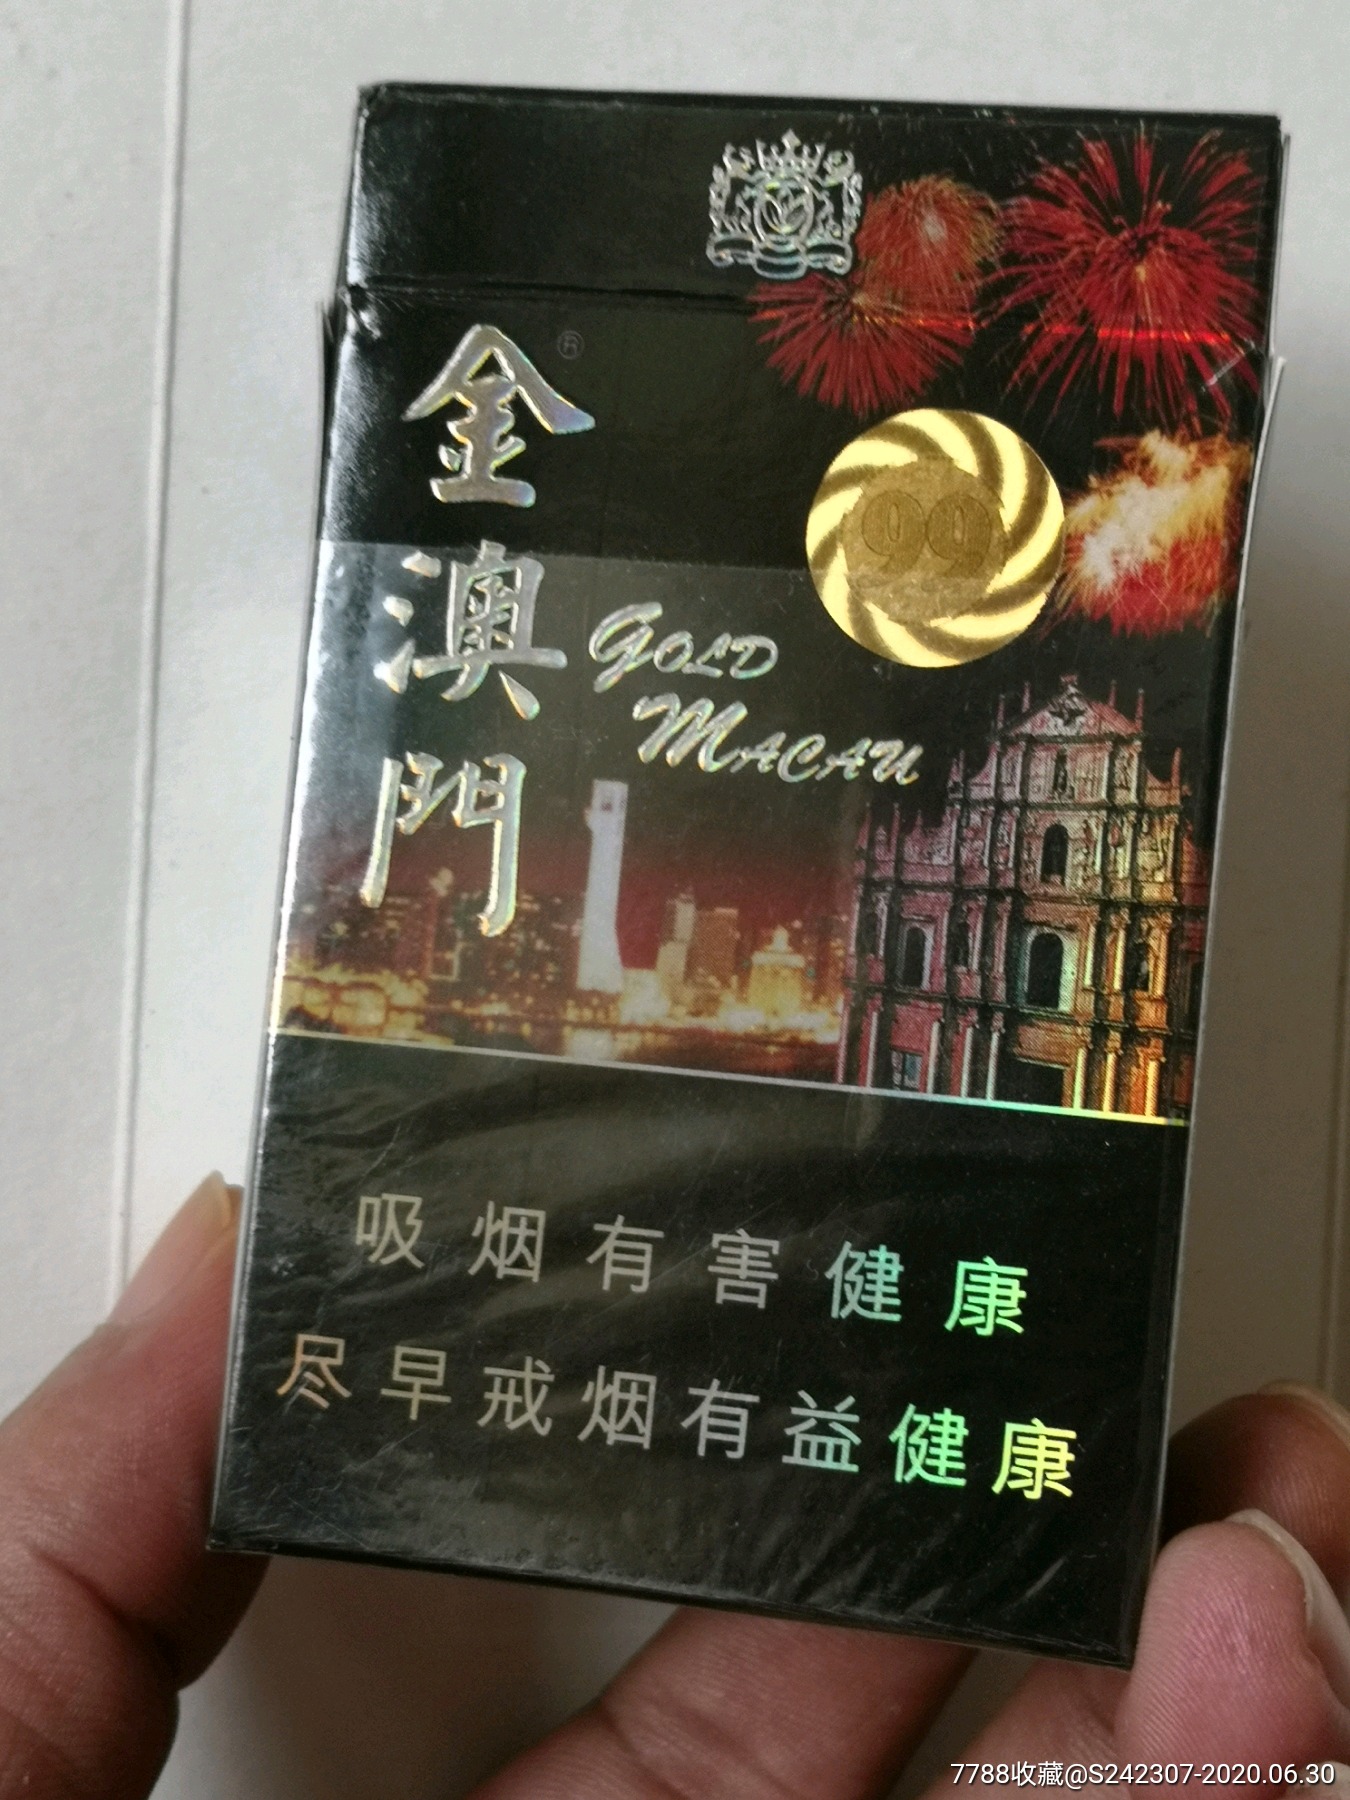 金短支中华 - 香烟漫谈 - 烟悦网论坛